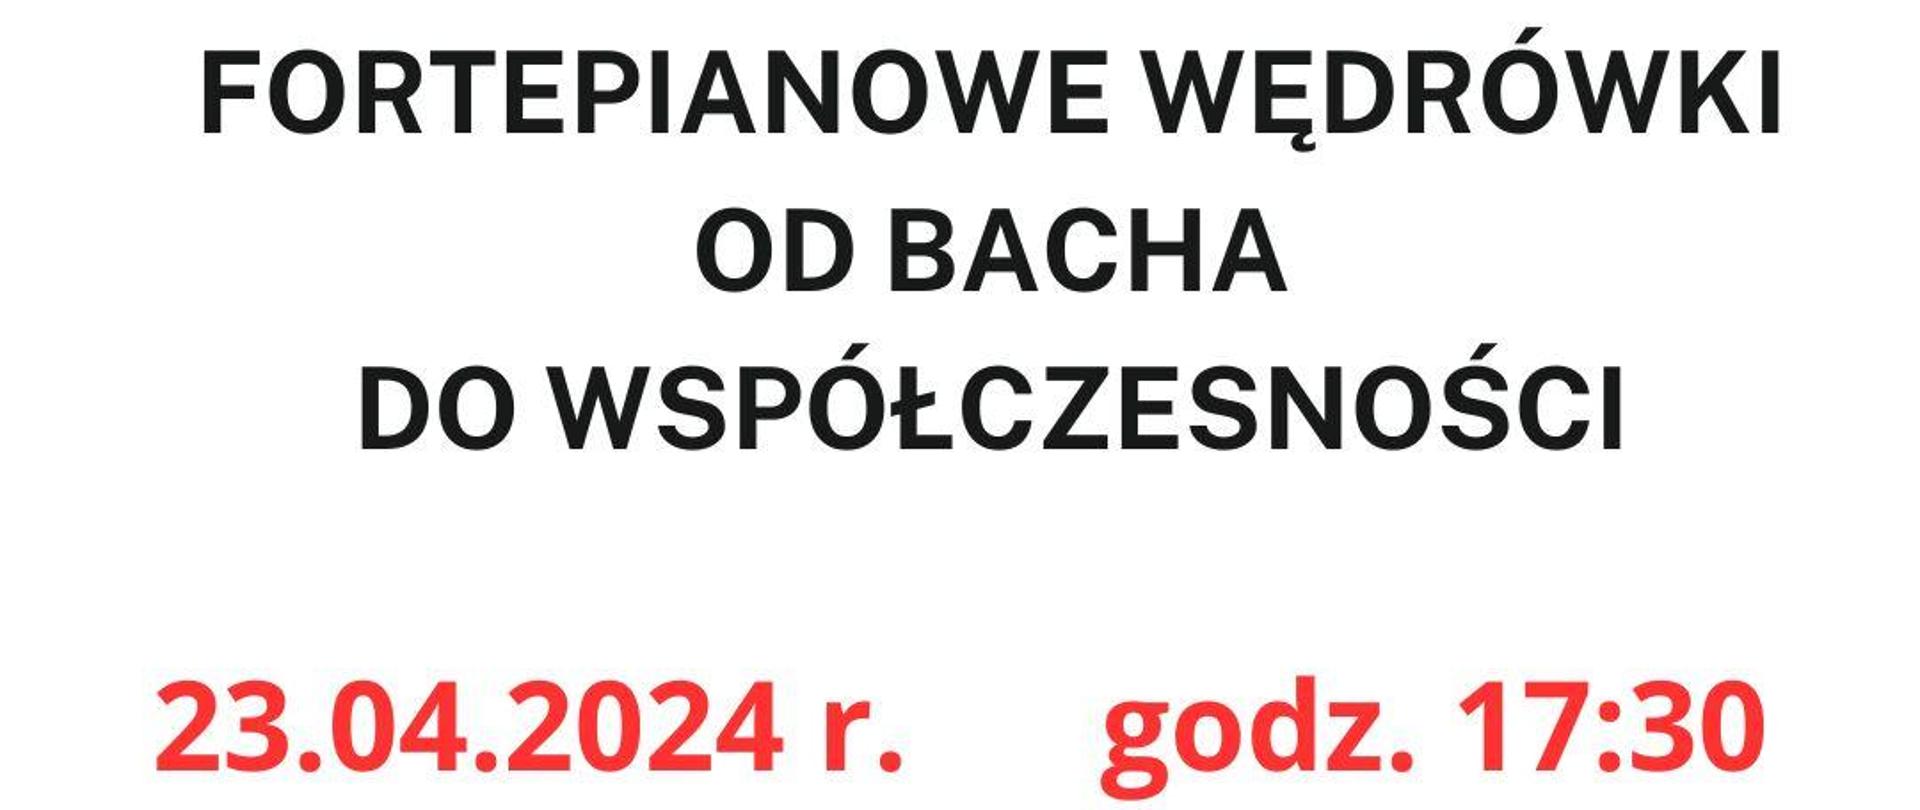 fortepianowe wędrówki od Bacha do współczesności 23.04.2024